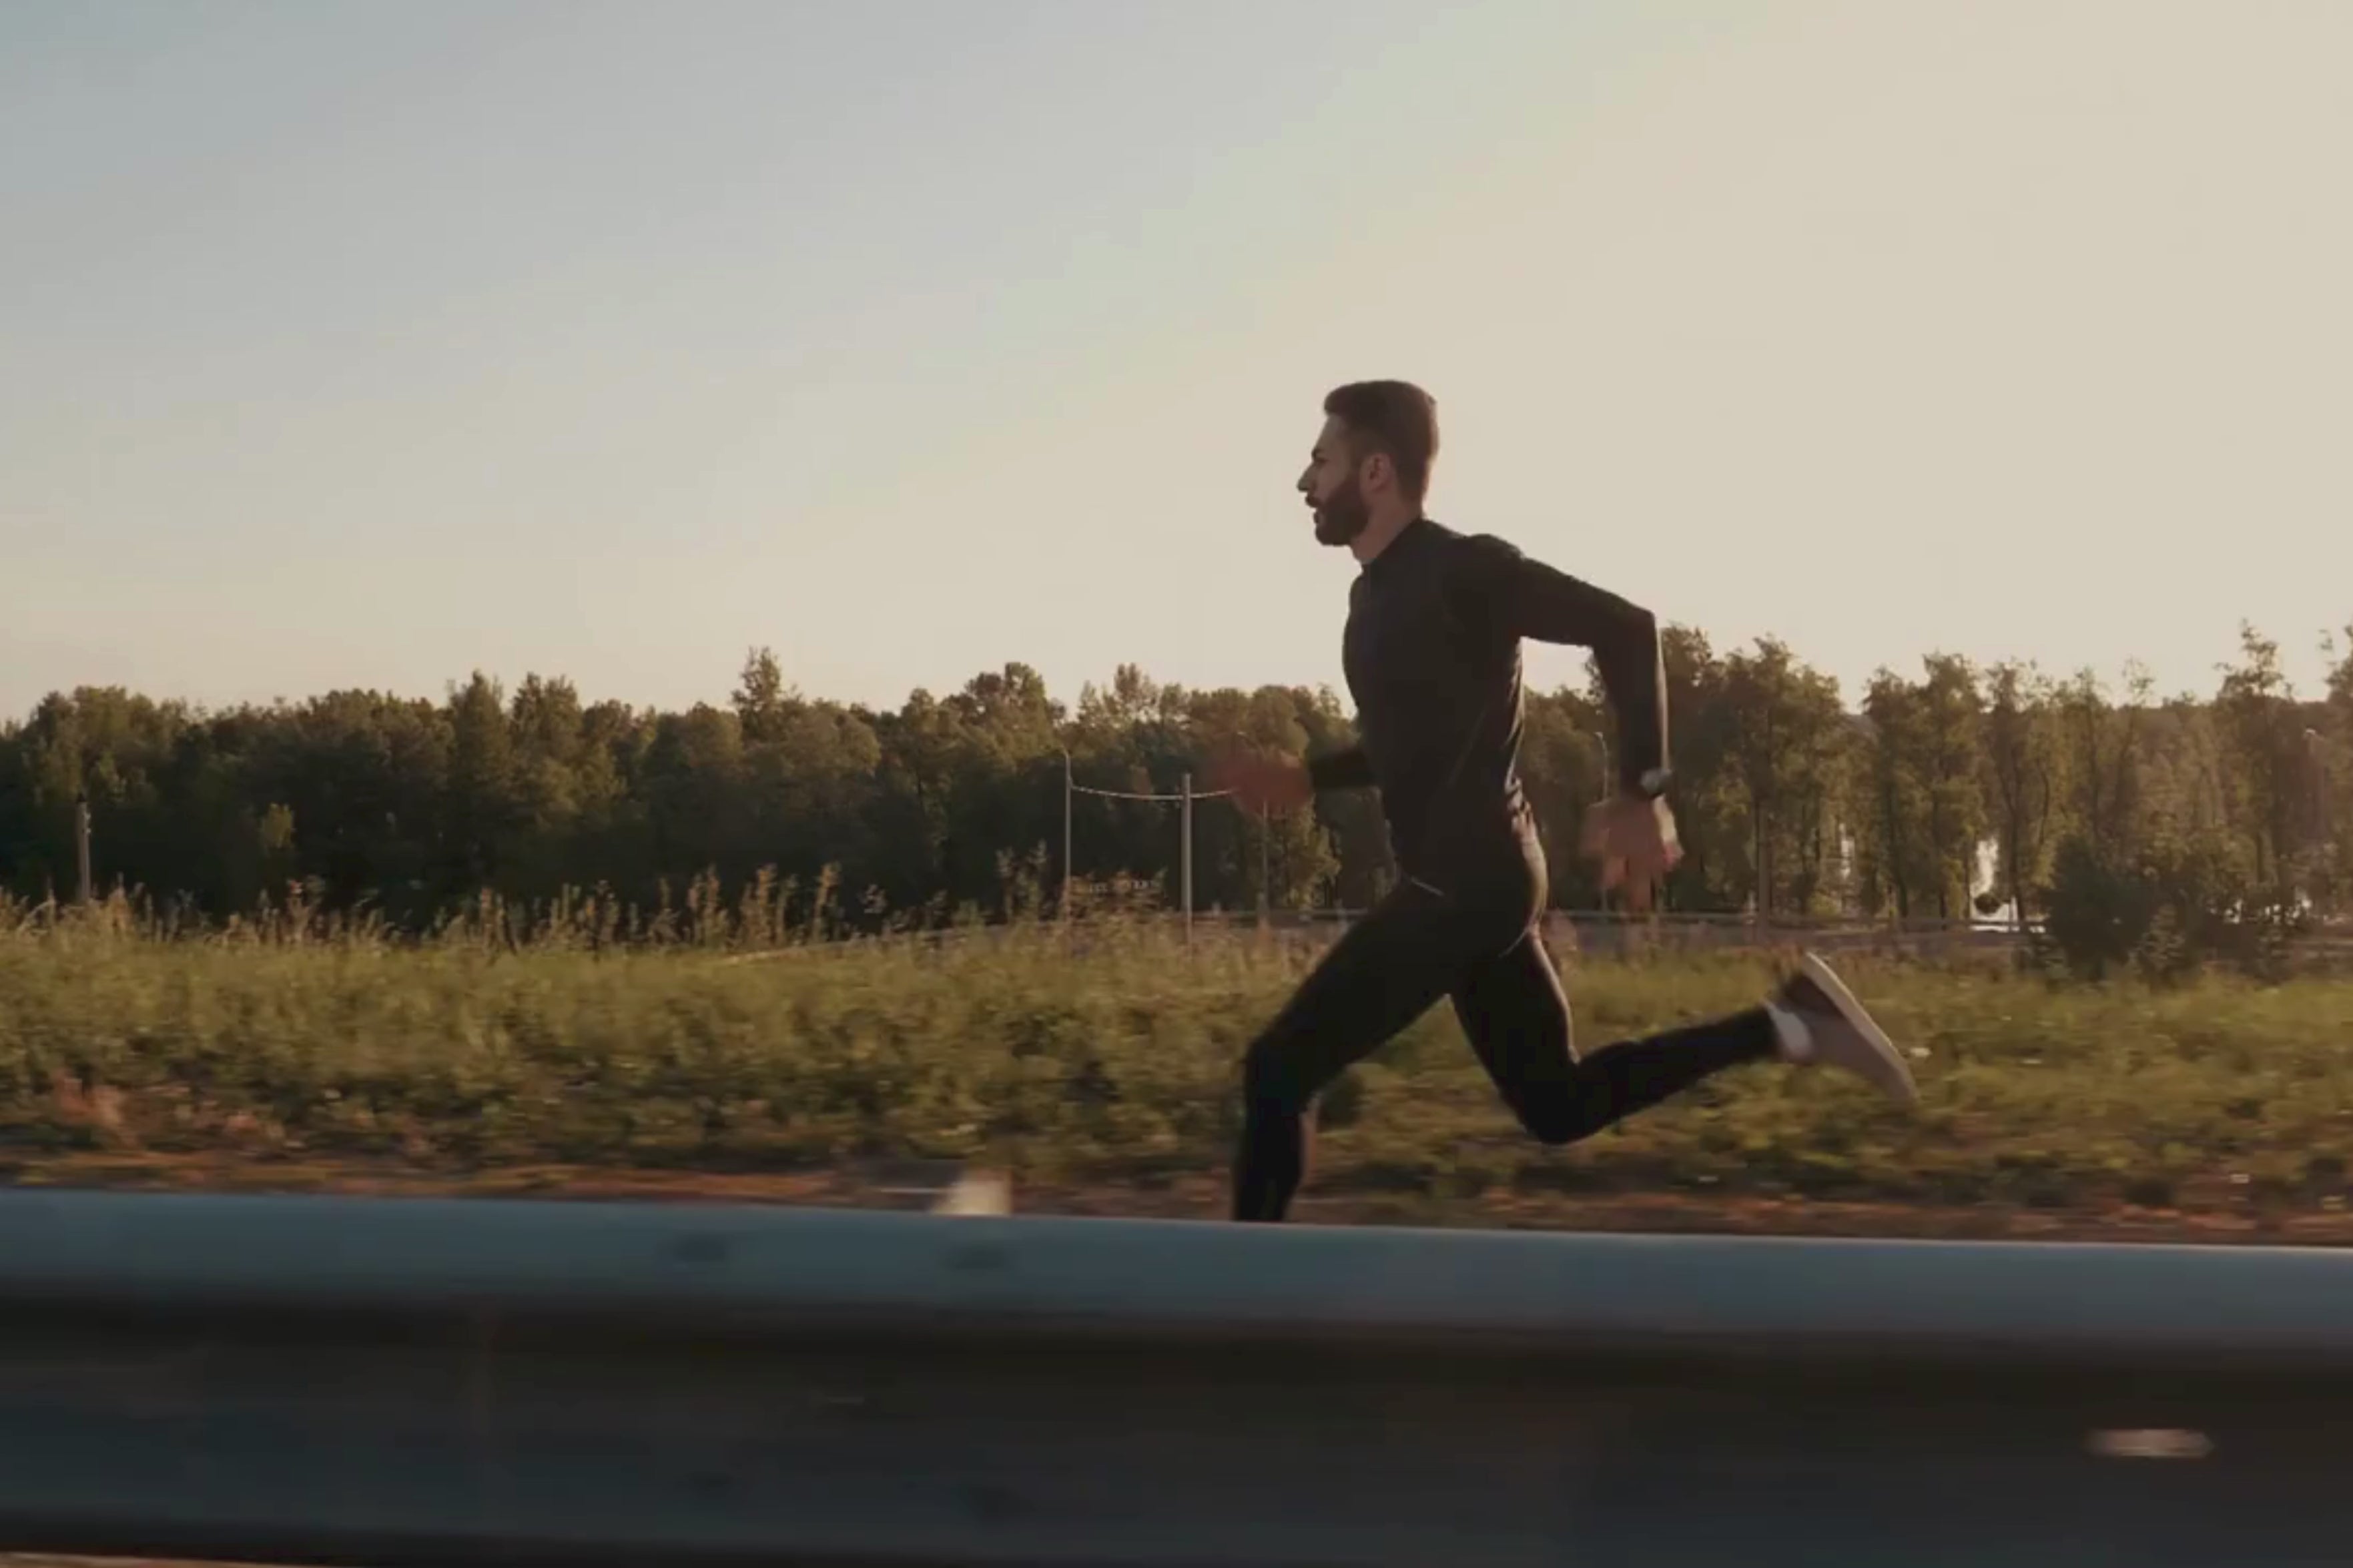 Load video: Running Men Short Video